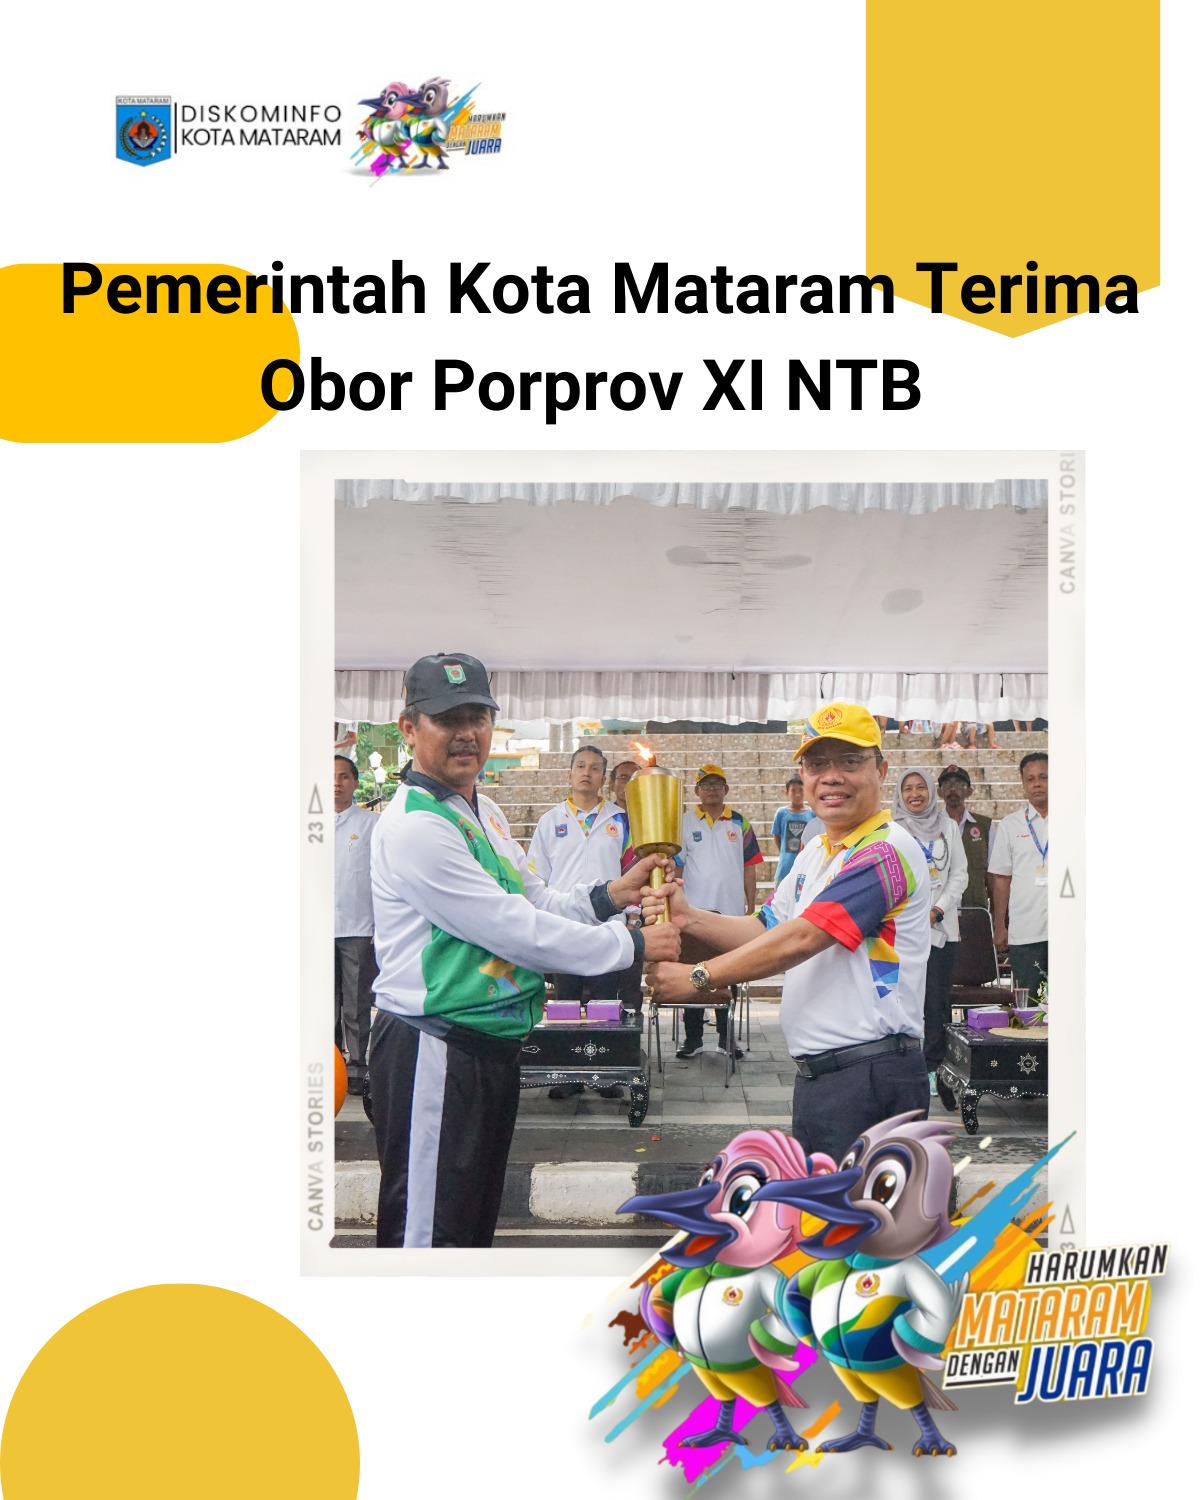 Pemerintah Kota Mataram Terima Obor Porprov XI NTB